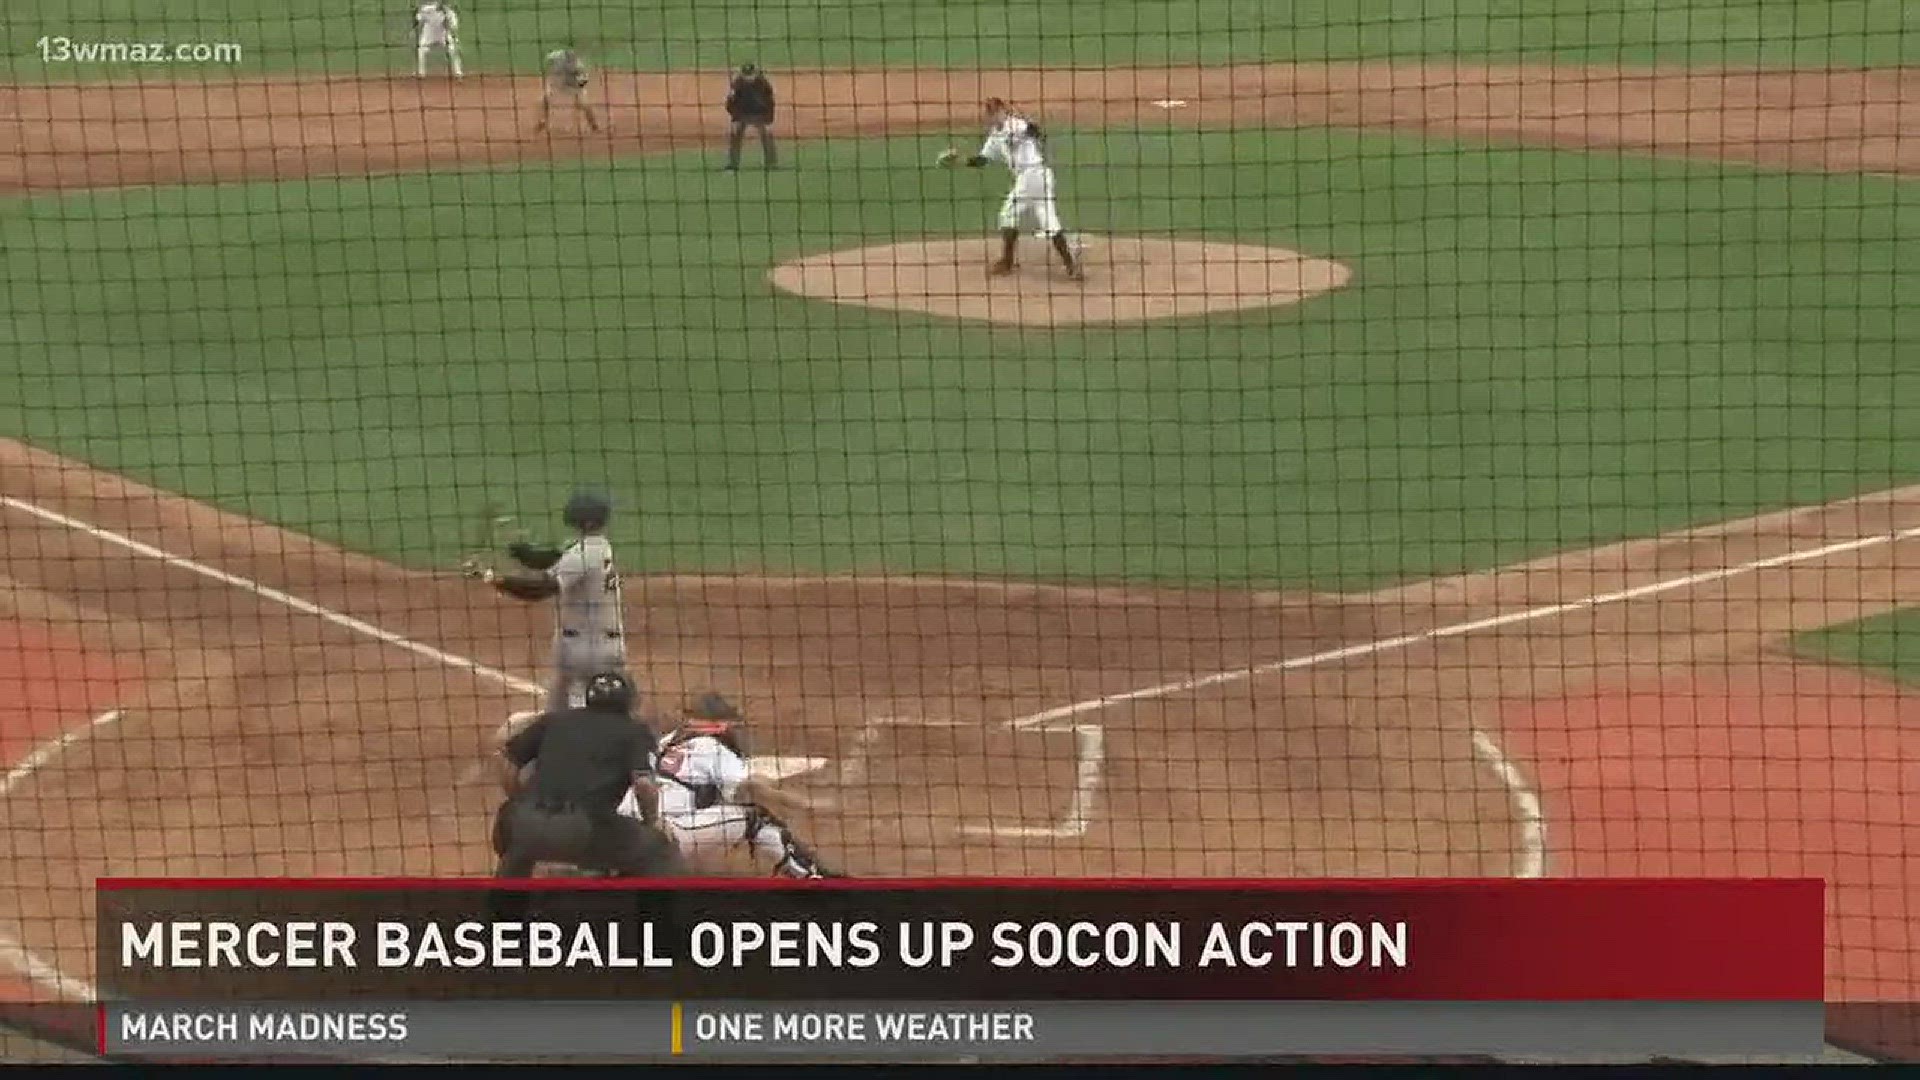 Mercer baseball opens up SOCON action